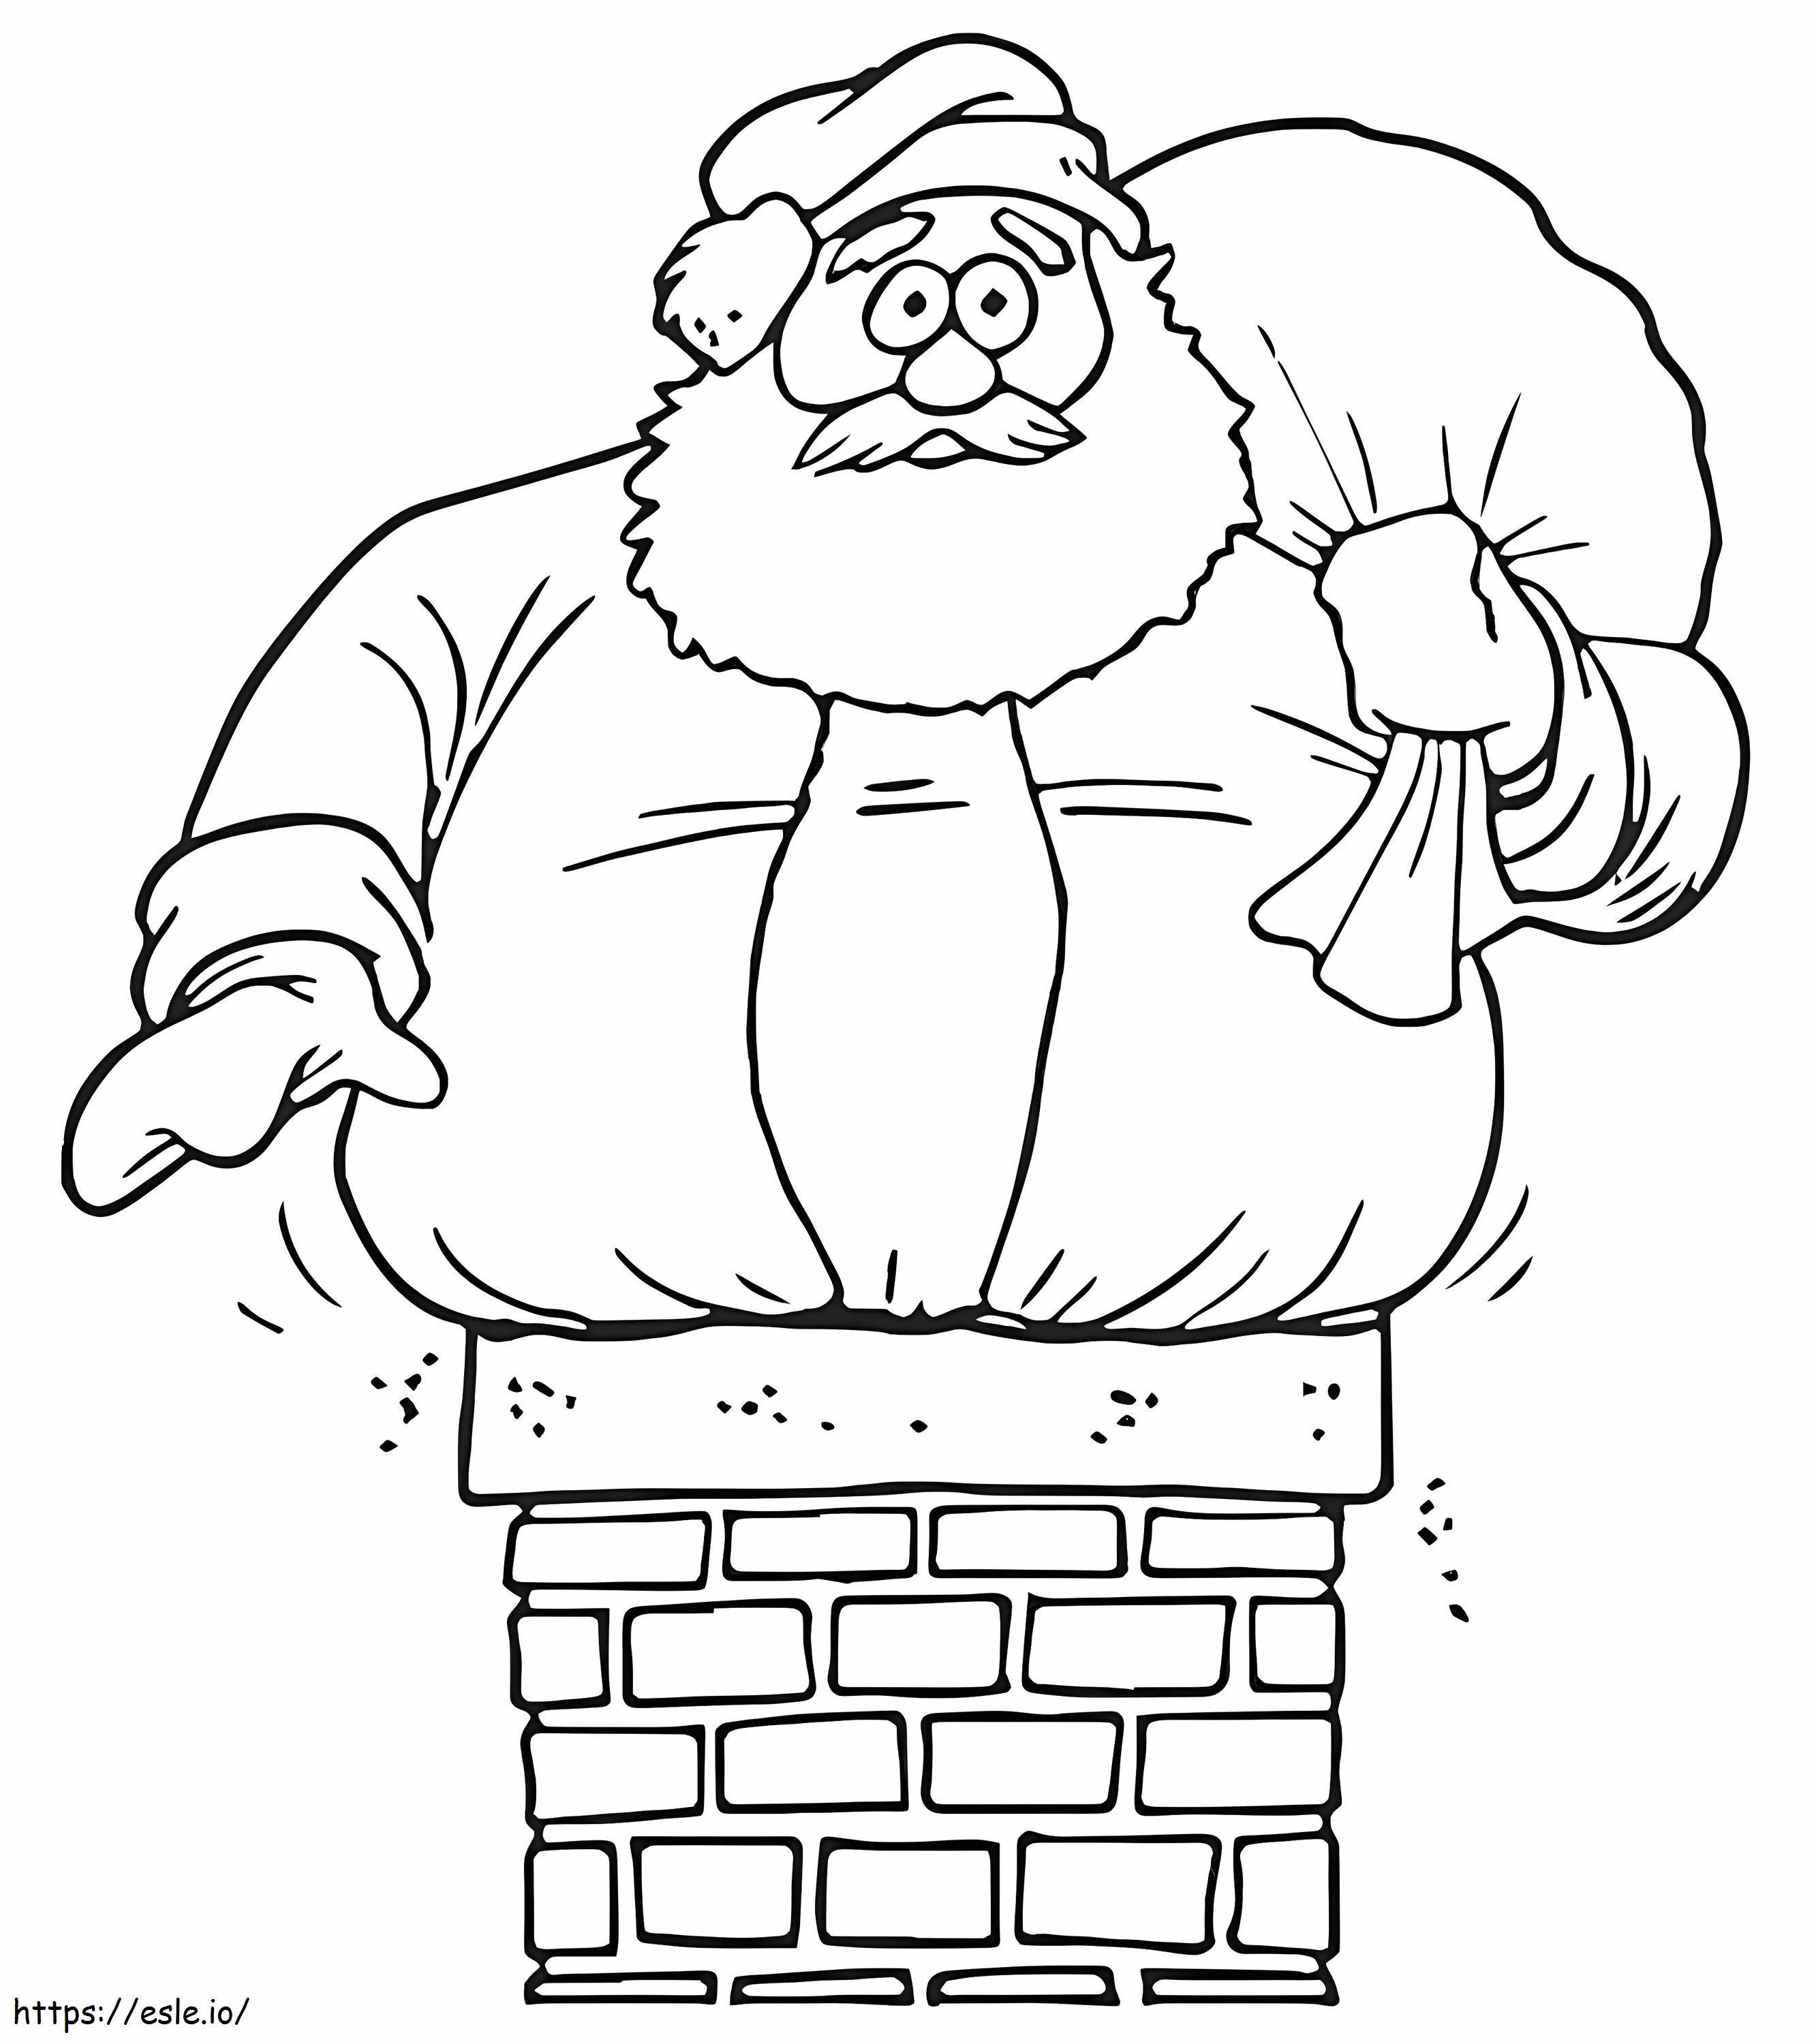 Papá Noel atrapado en una chimenea para colorear